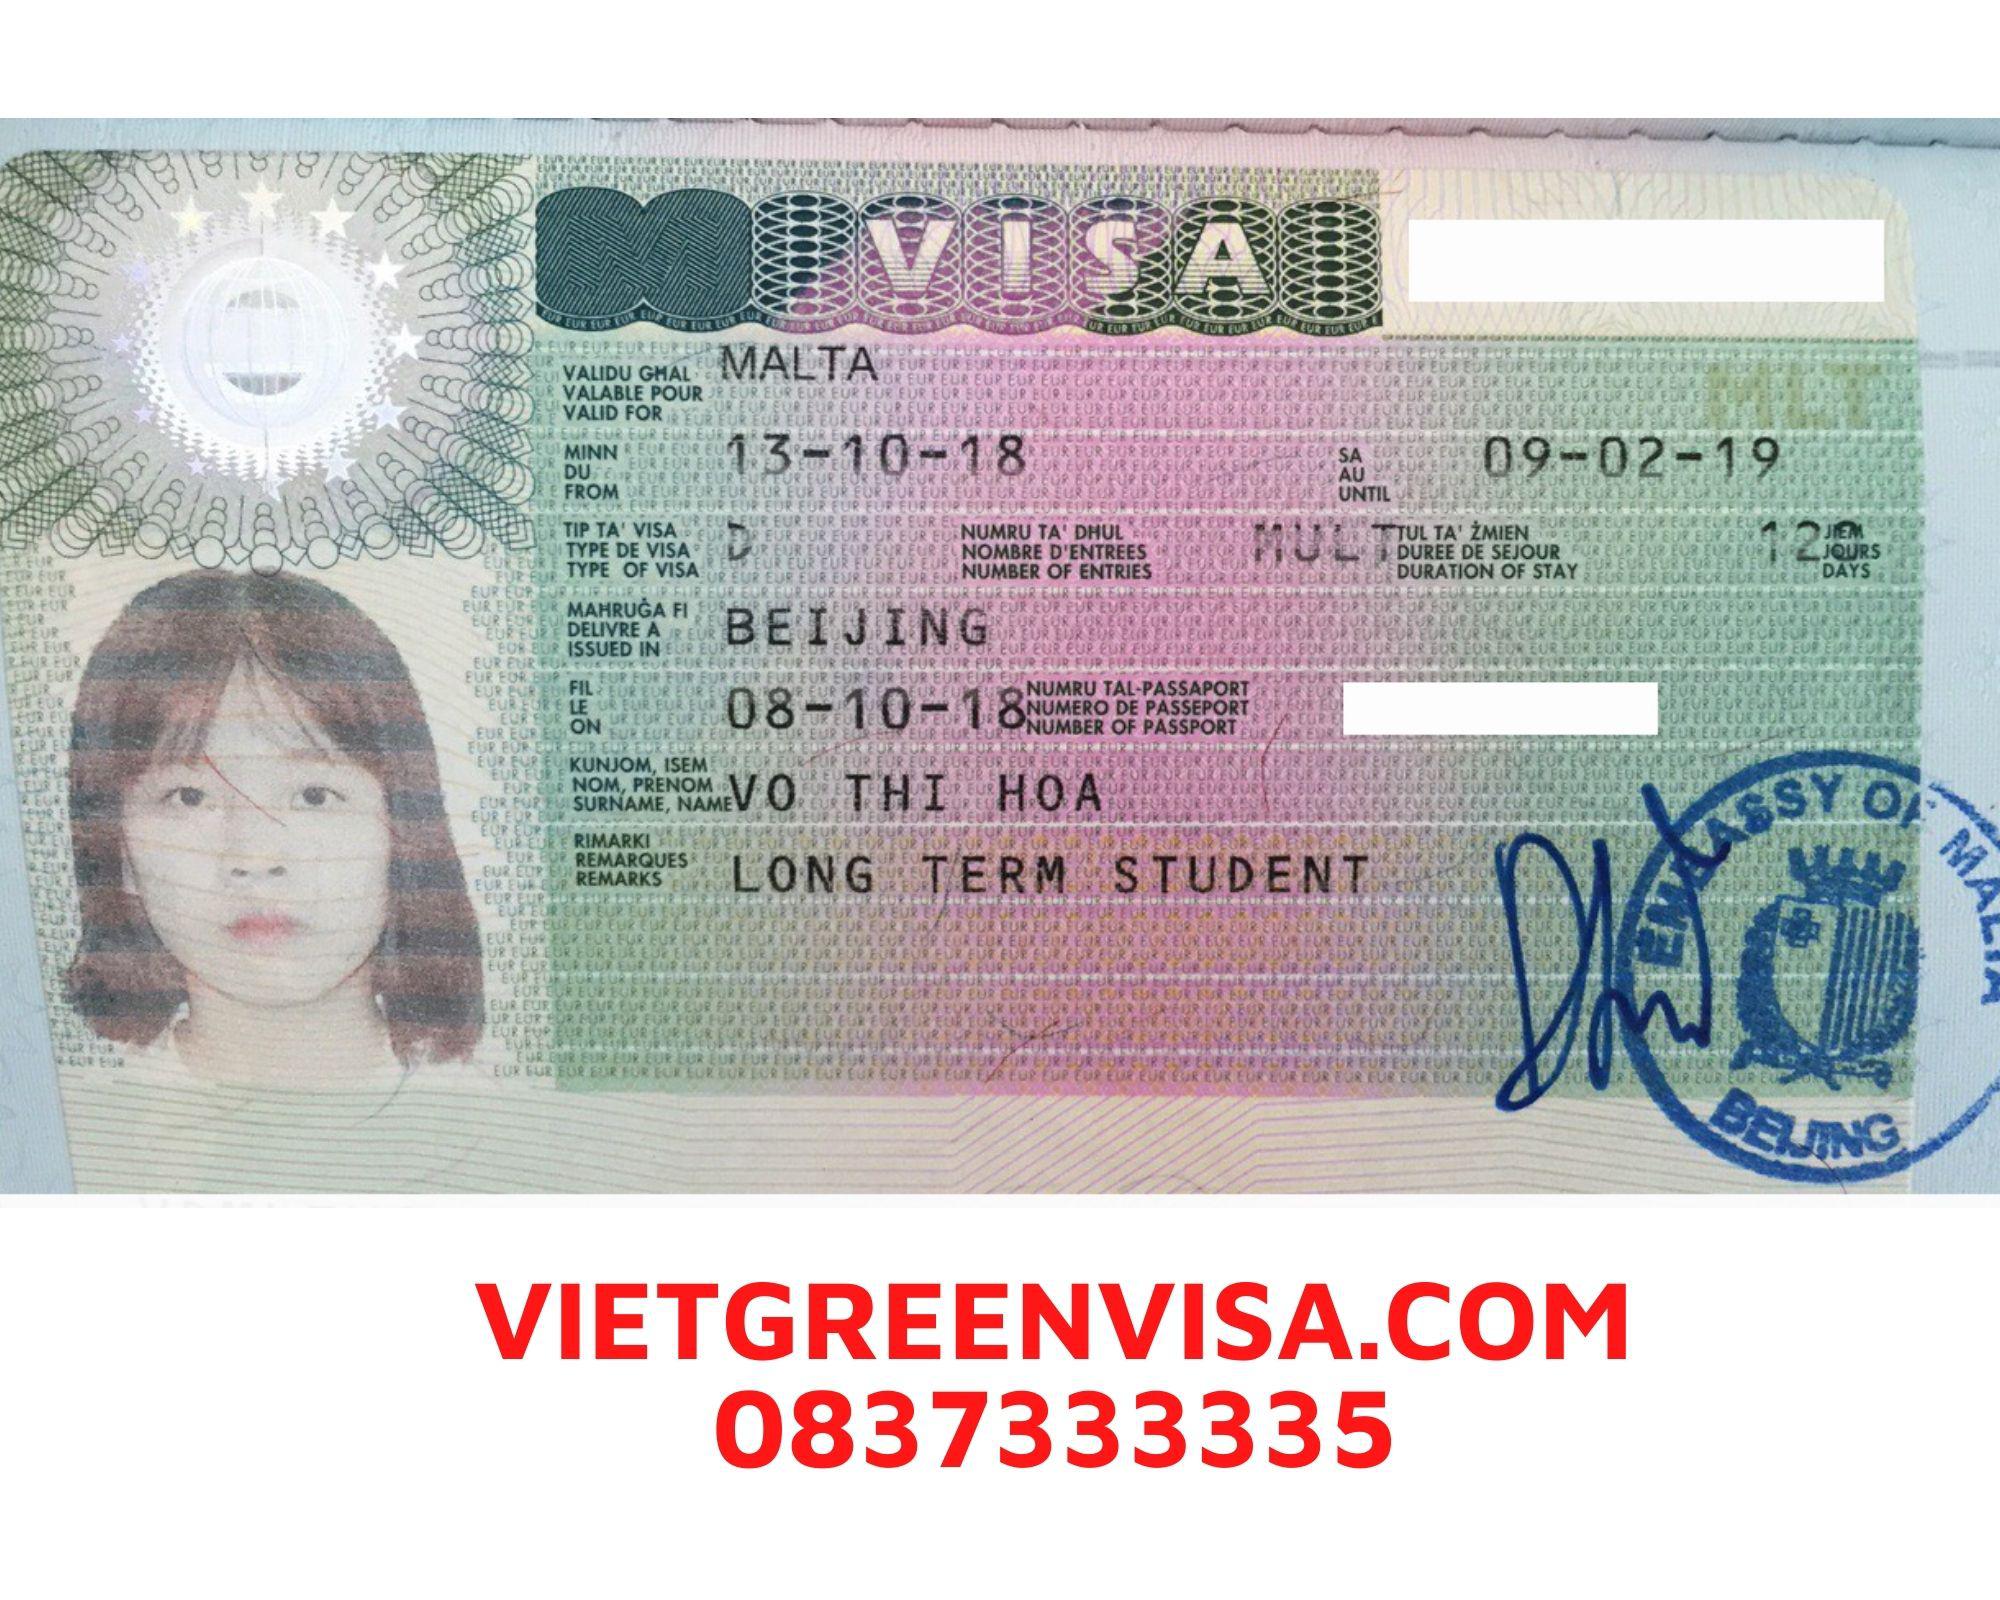 Dịch thuật công chứng hồ sơ visa du lịch, du học Malta 